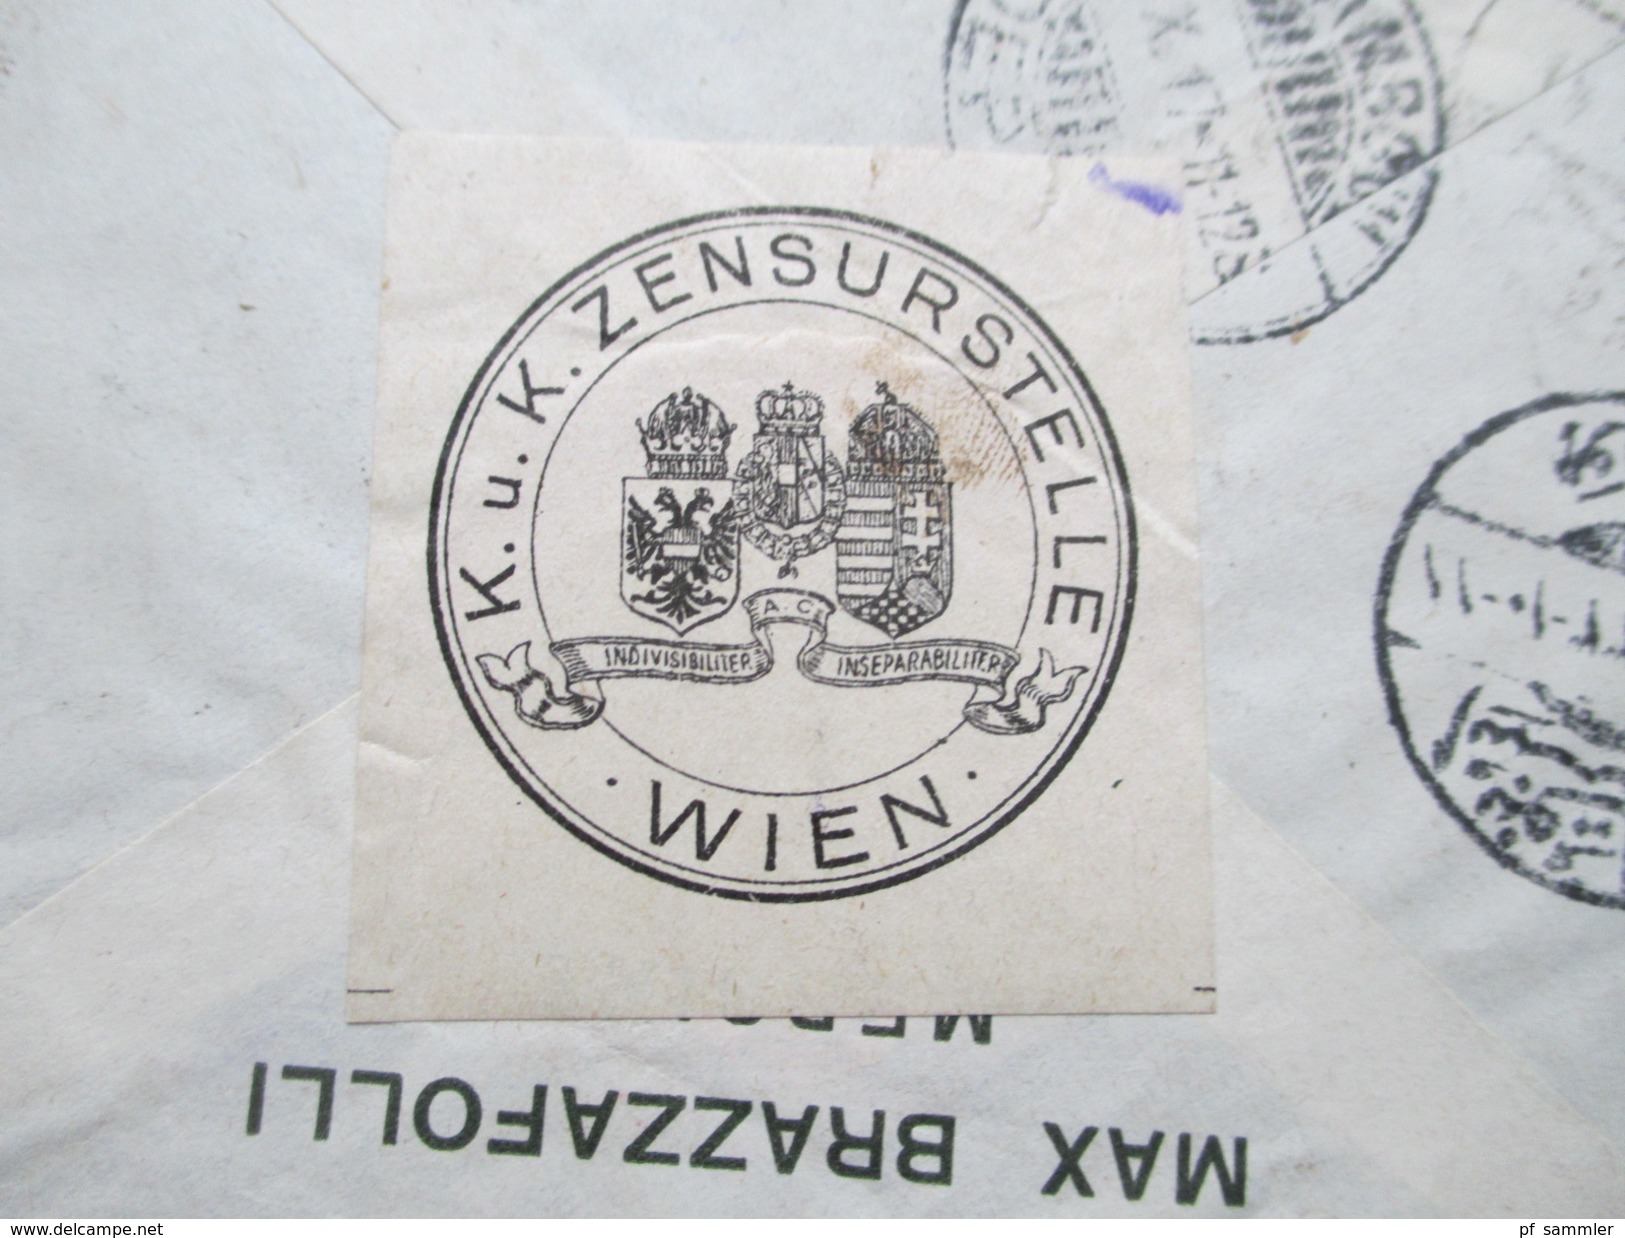 Türkei 1917?! R-Brief Mersine No 612 - Wien. schwarzer Kastenstempel. Recommande! Zensur. Viele Vermerke und Stempel!!